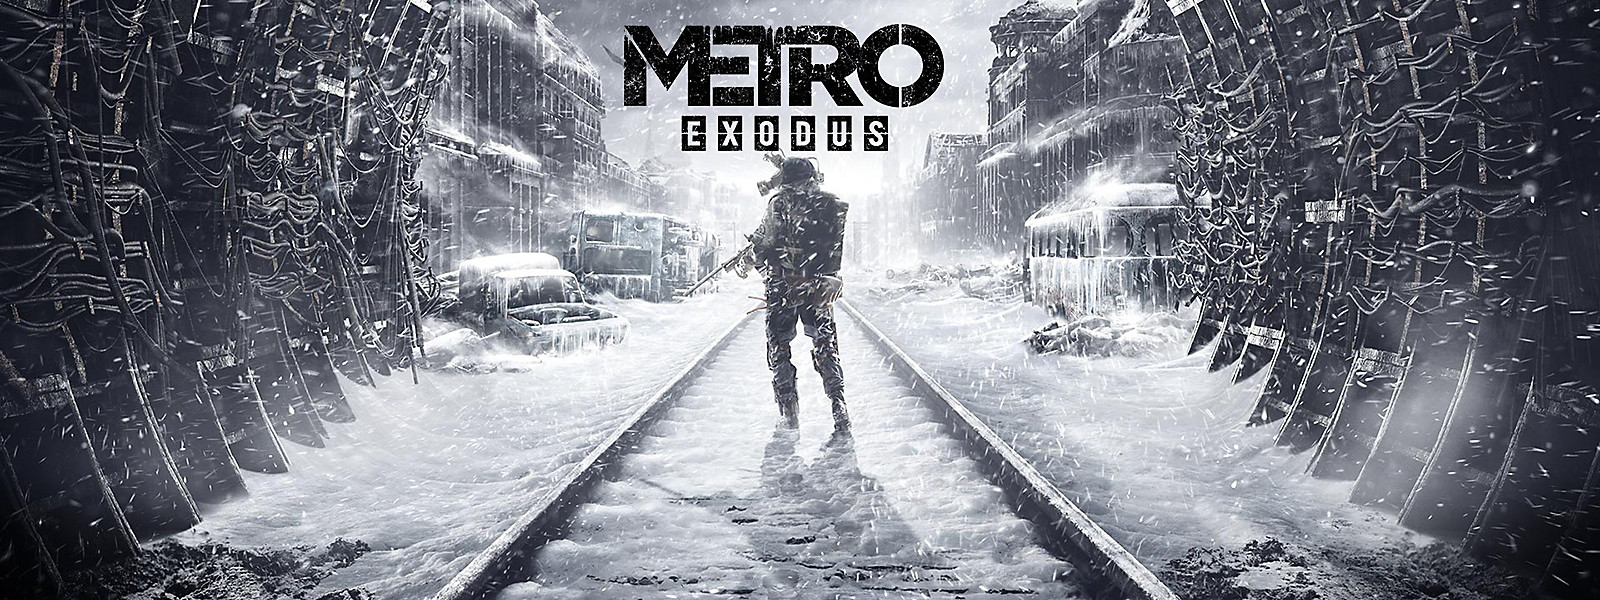 Metro Exodus Featured